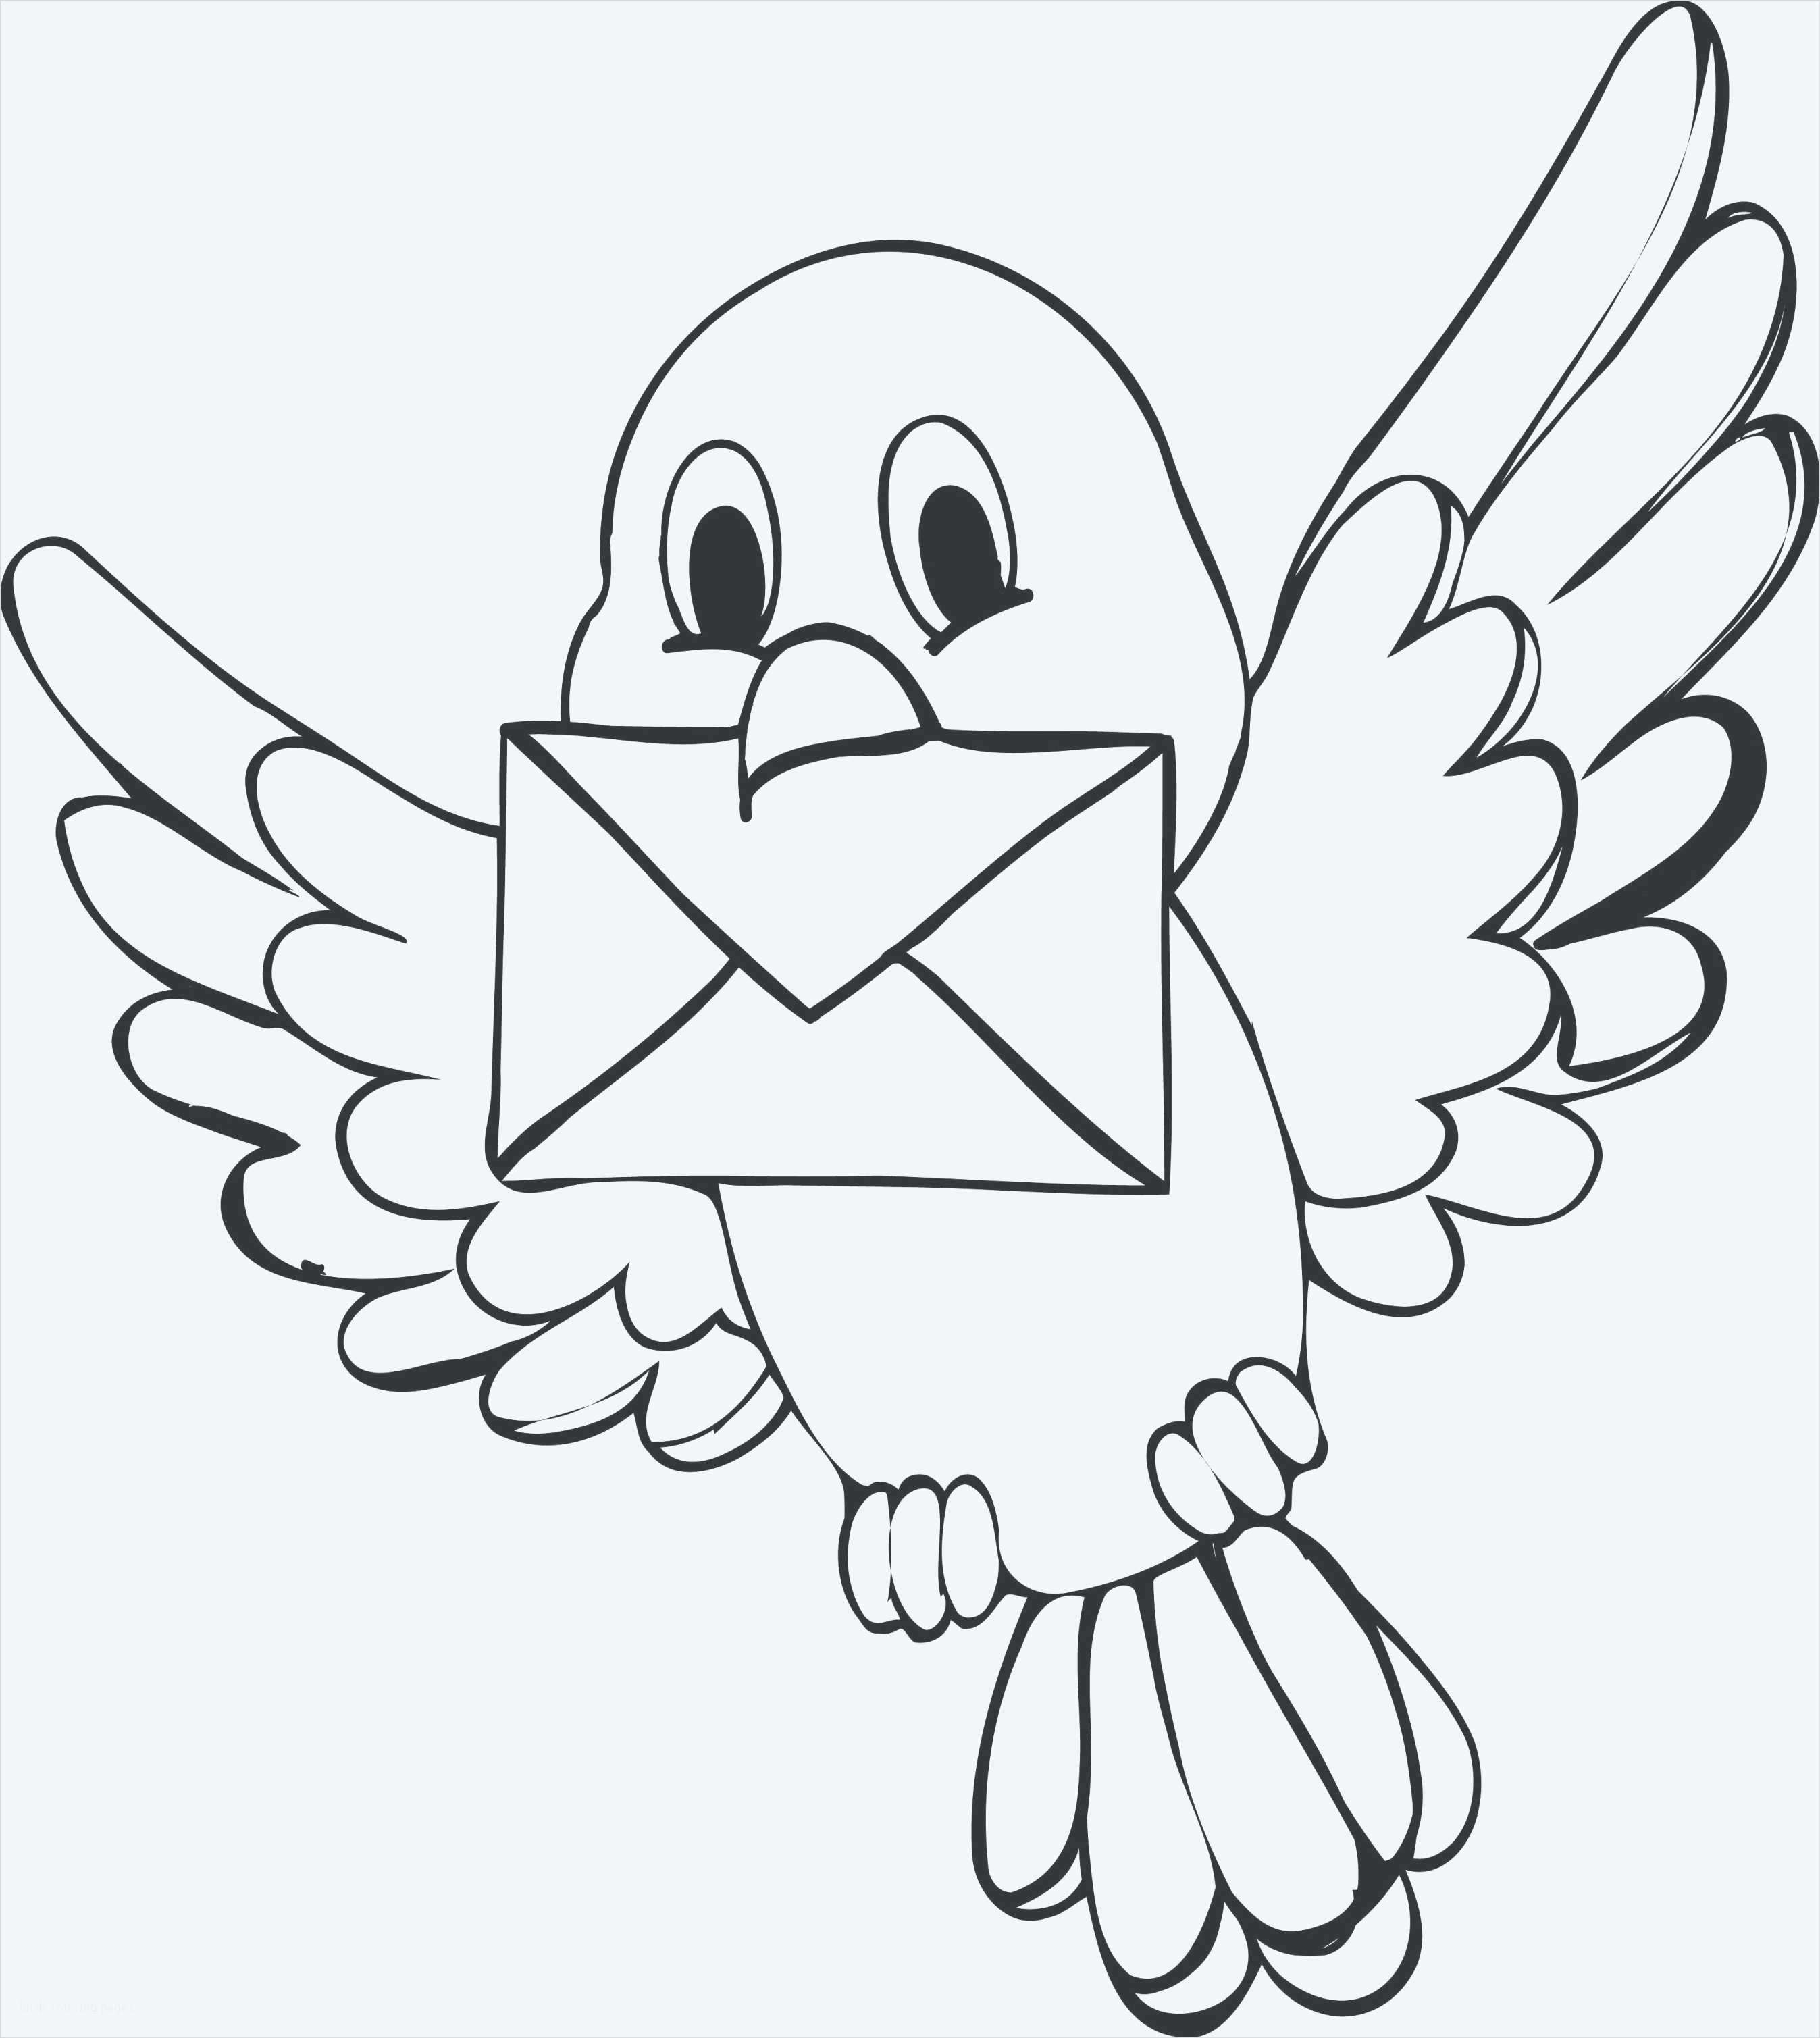 Tranh tô màu chim đưa thư